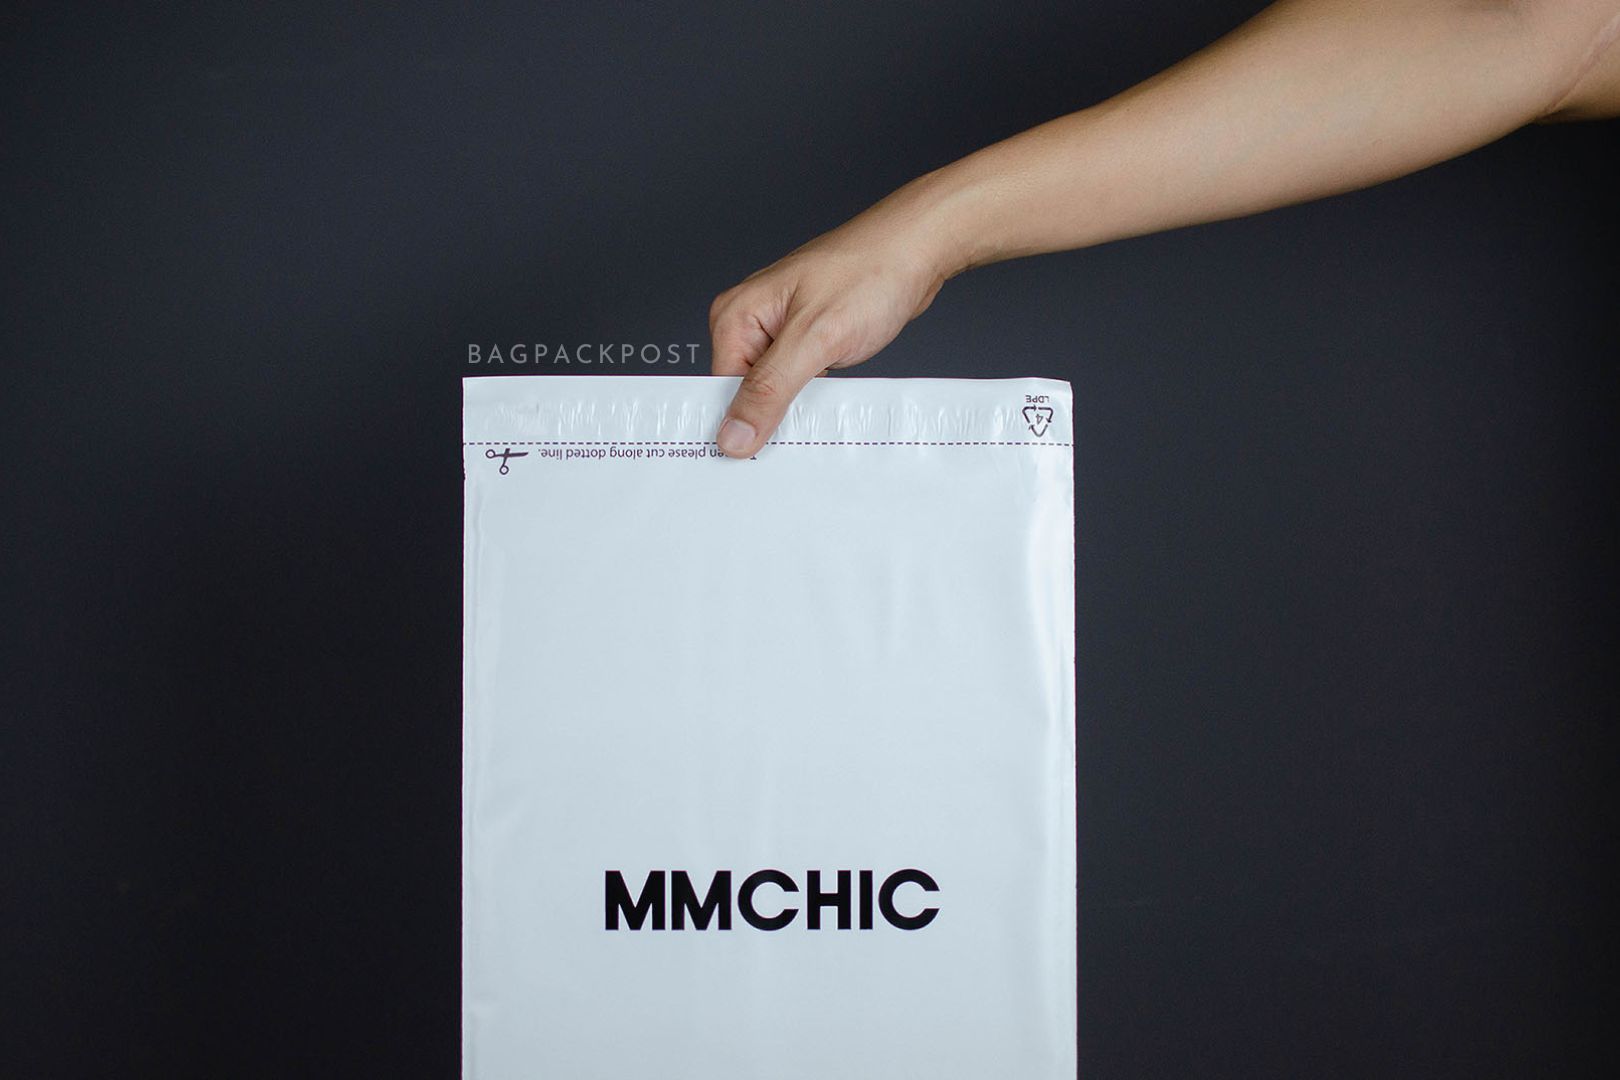 ผลิตถุงไปรษณีย์ ซองไปรษณีย์พิมพ์ลาย mmchic ซองไปรษณีย์สีขาว ถุงไปรษณีย์พิมพ์ลาย 2 BagPackPost